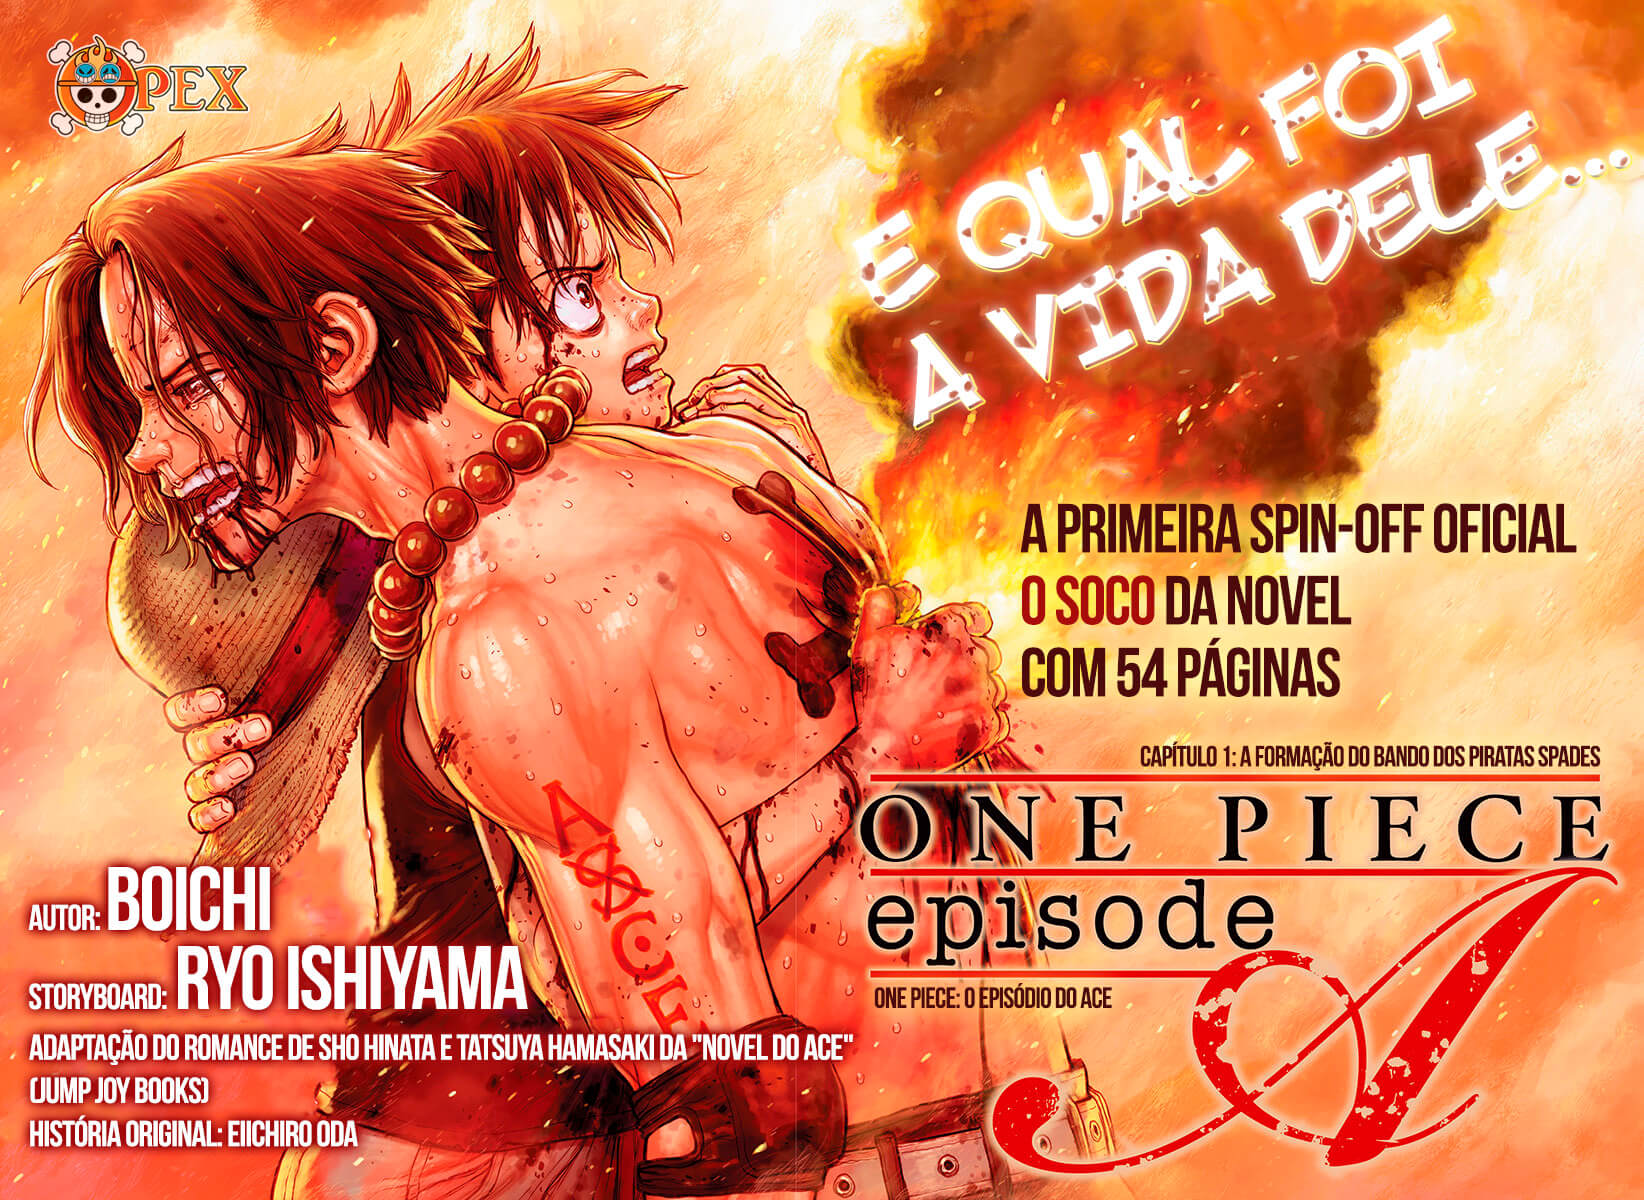 Mangá de One Piece passa a ter tradução oficial em português